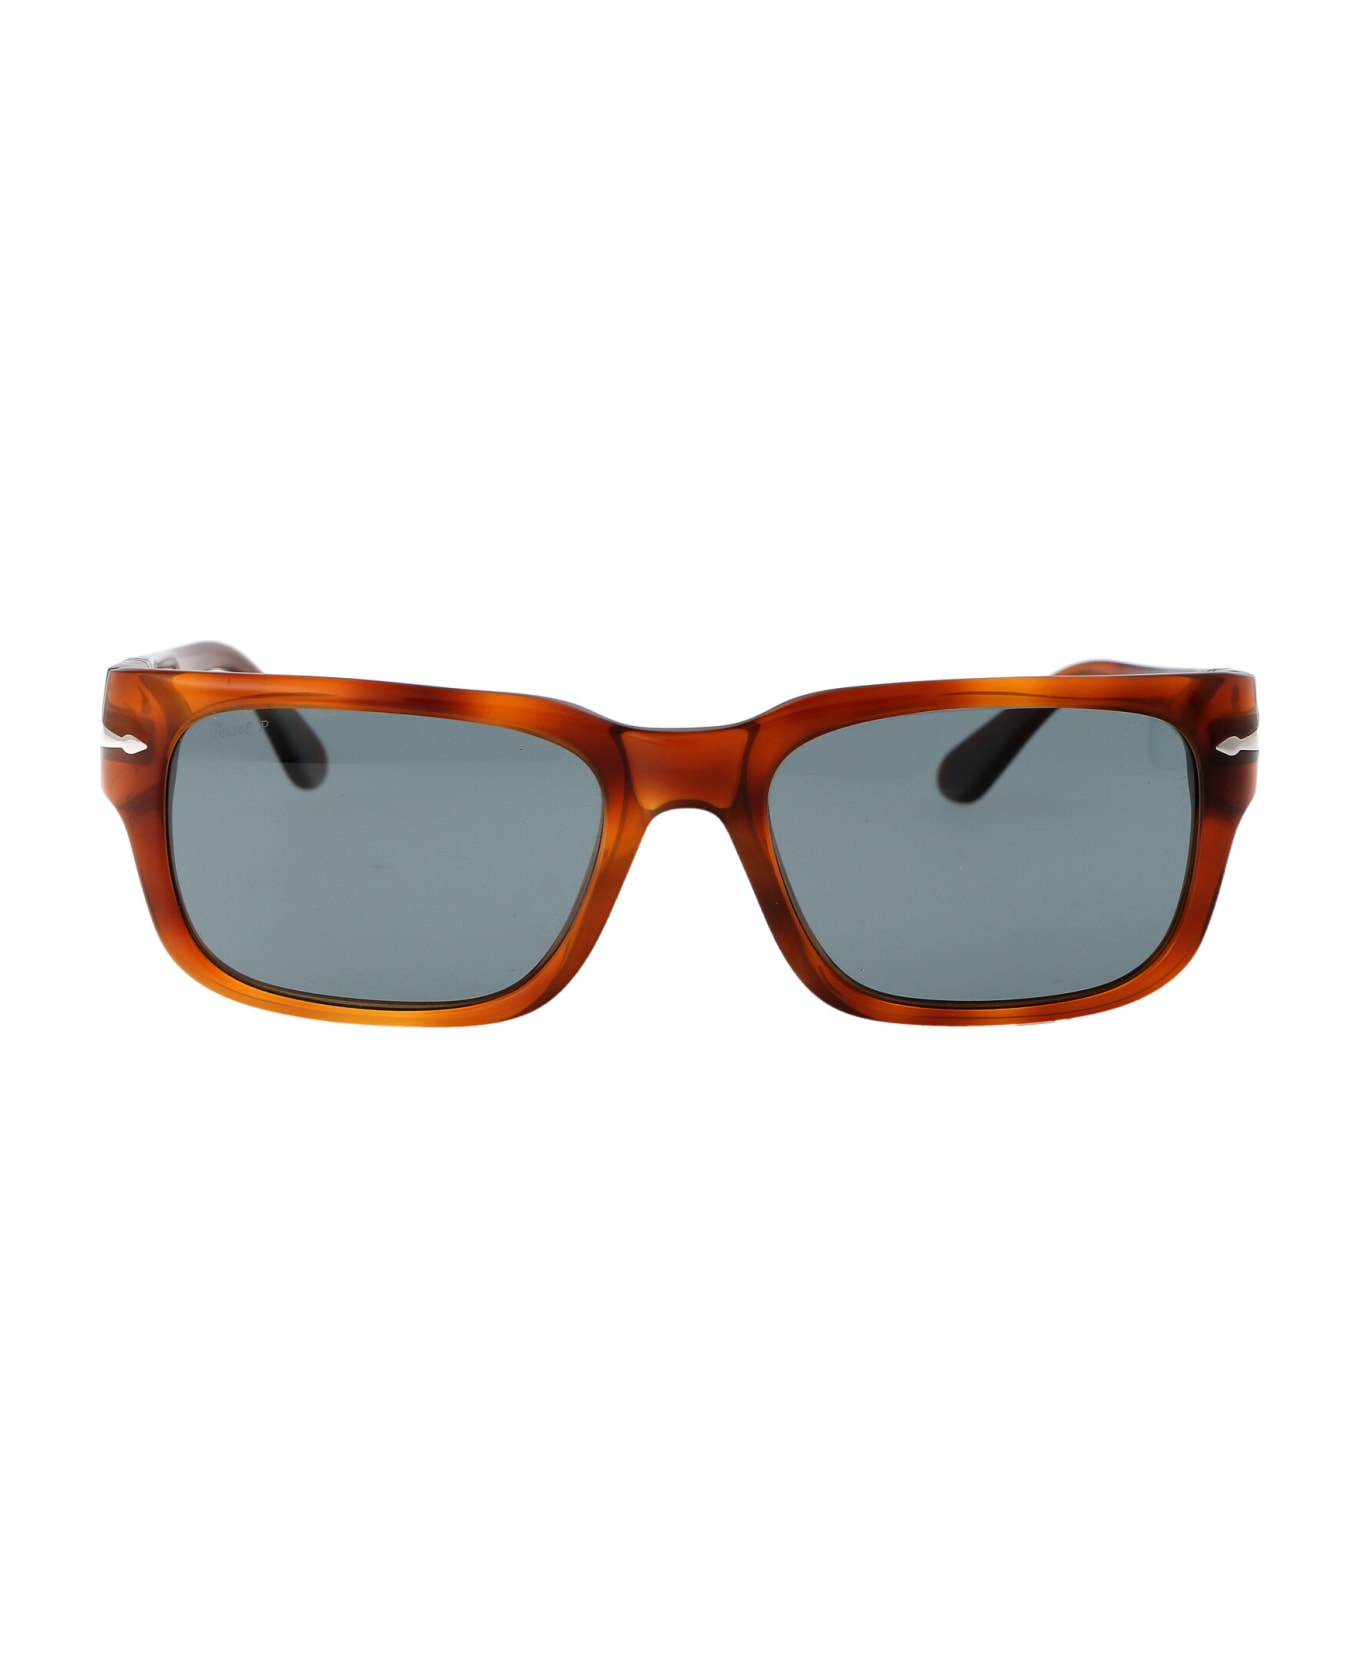 Persol 0po3315s Sunglasses - 96/3R Terra Di Siena サングラス